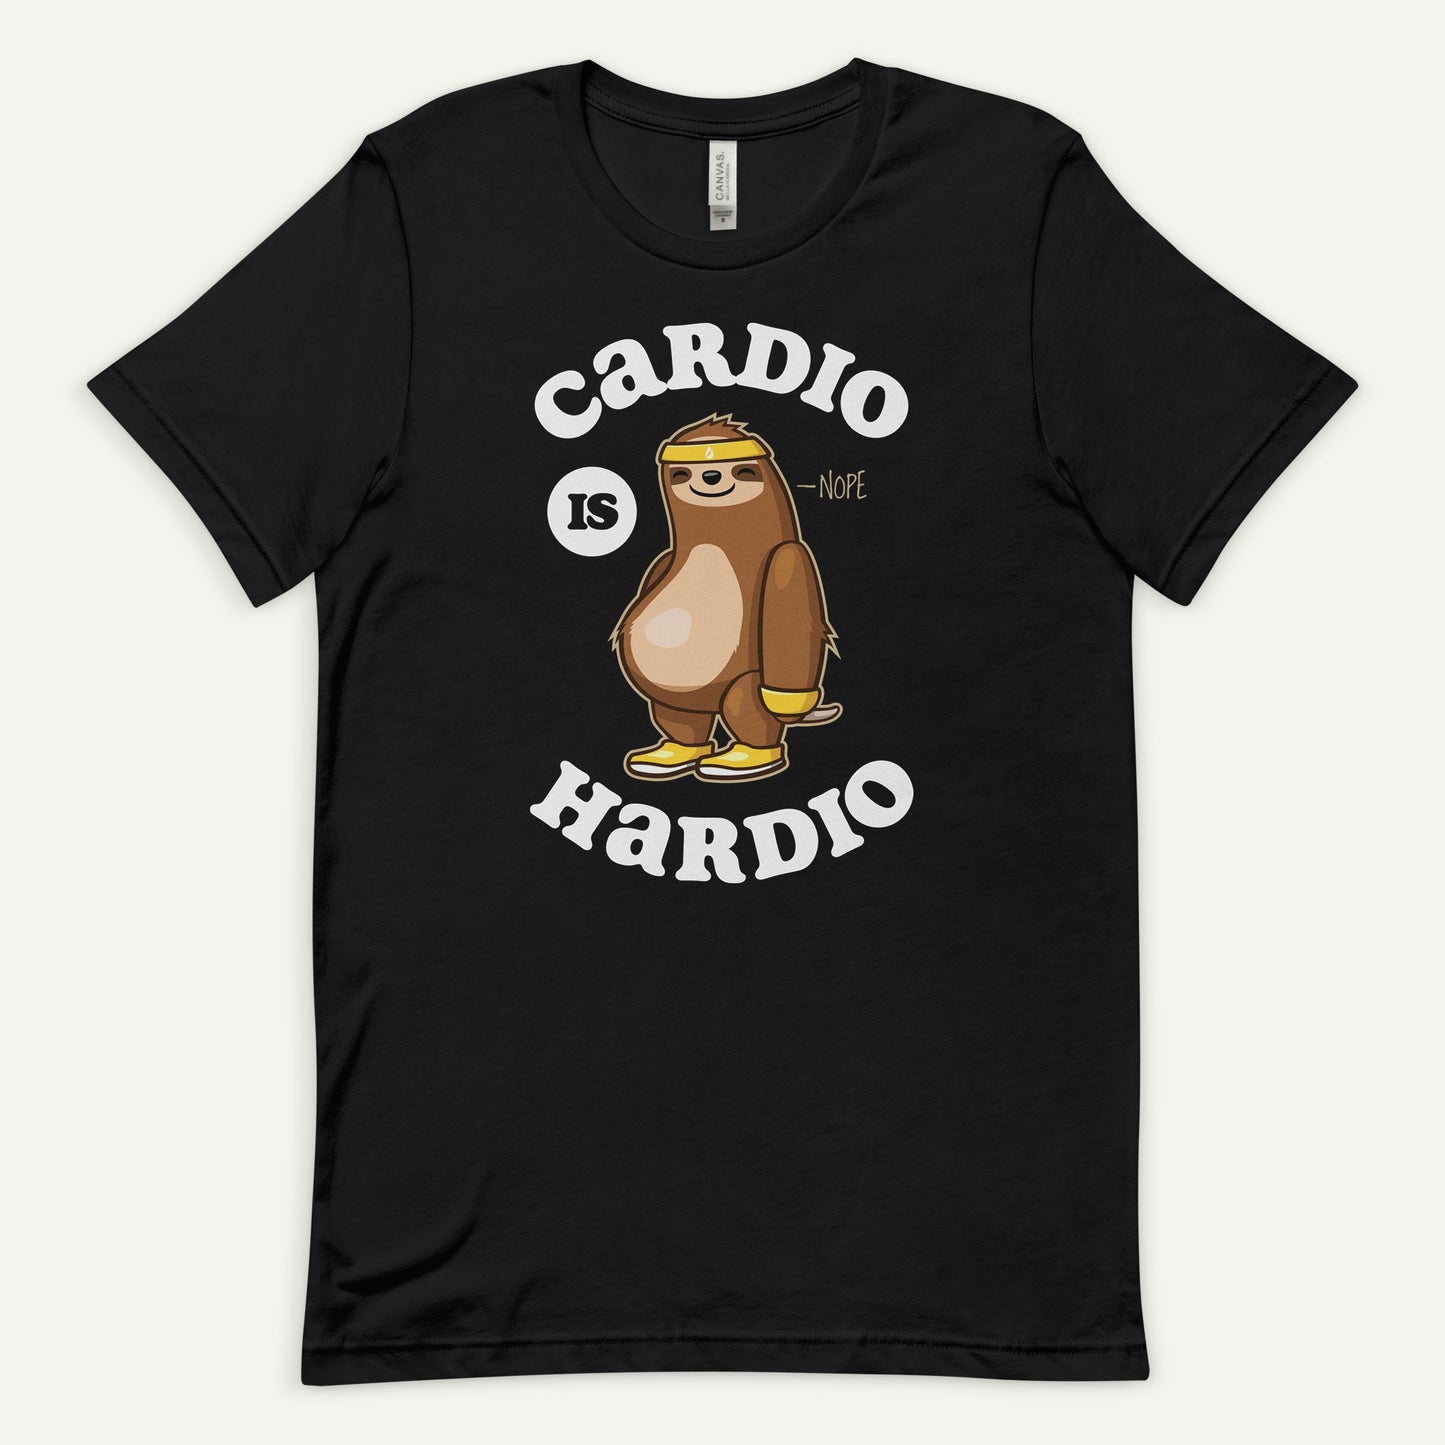 Cardio Is Hardio Men's Standard T-Shirt